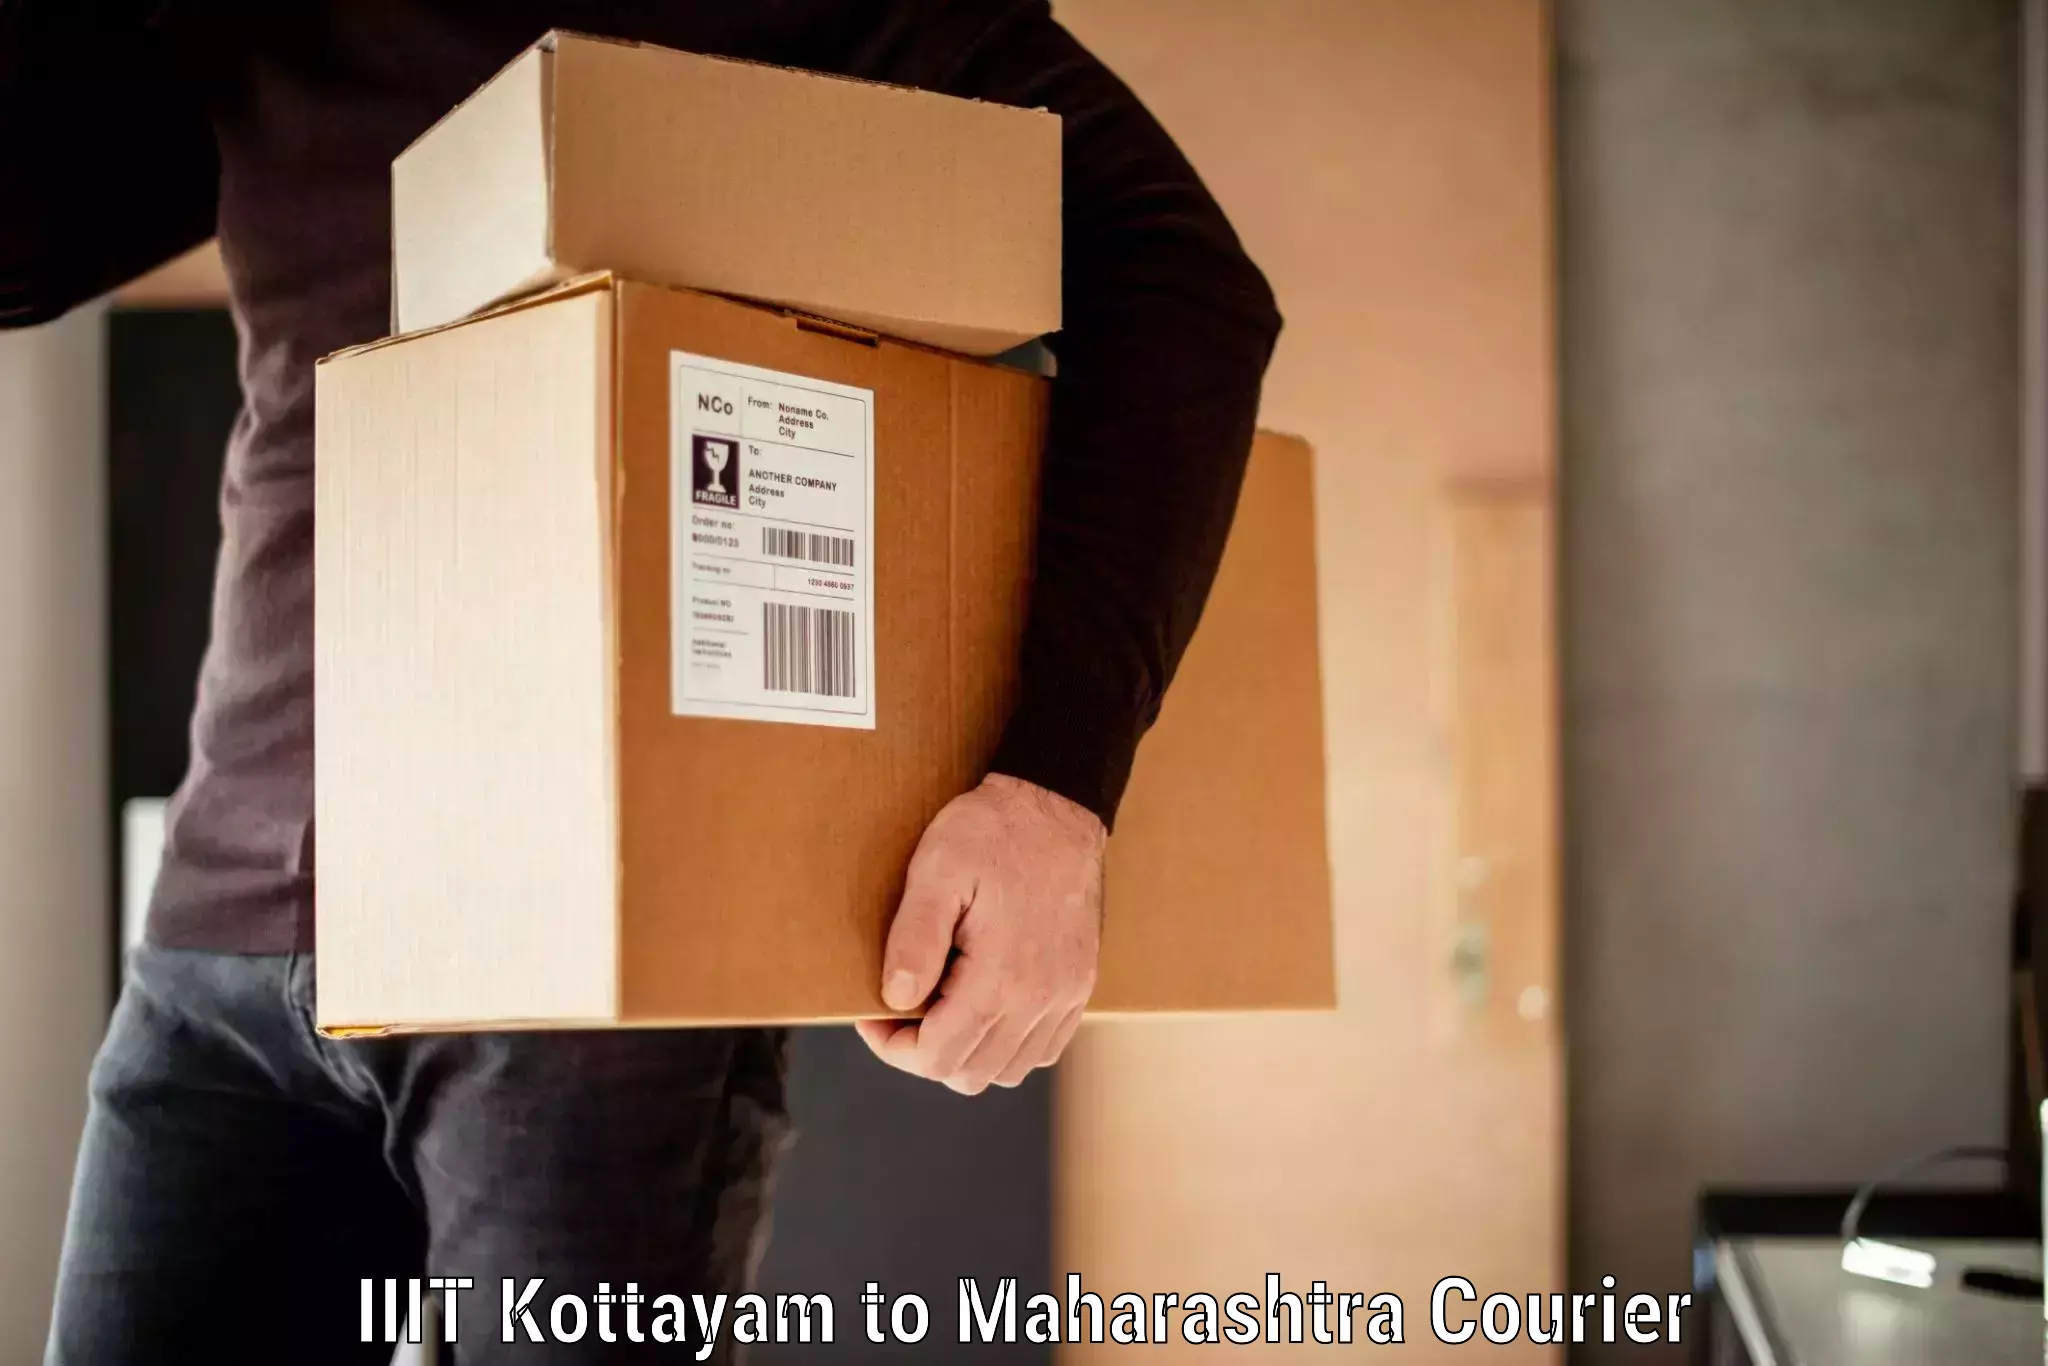 Luggage shipping planner IIIT Kottayam to Pune